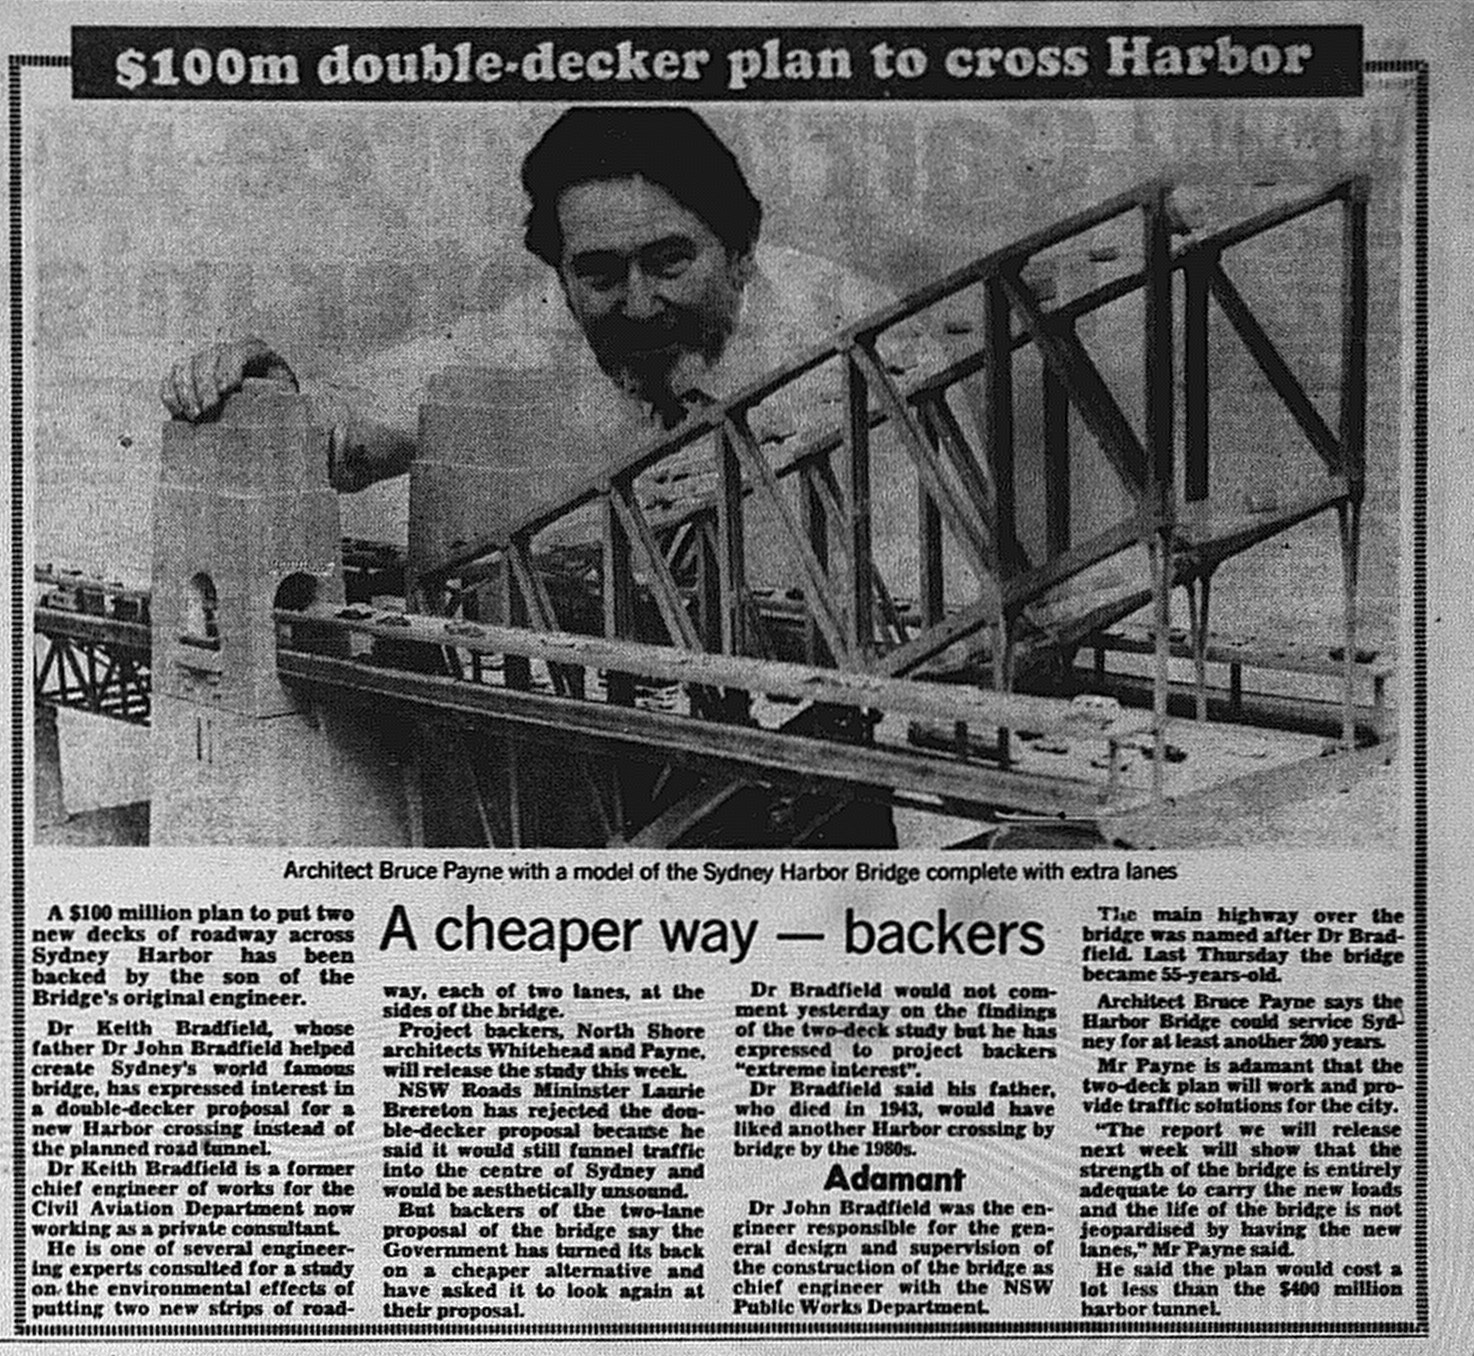 Sydney Harbour Bridge Double decker March 23 1987 daily telegraph 13